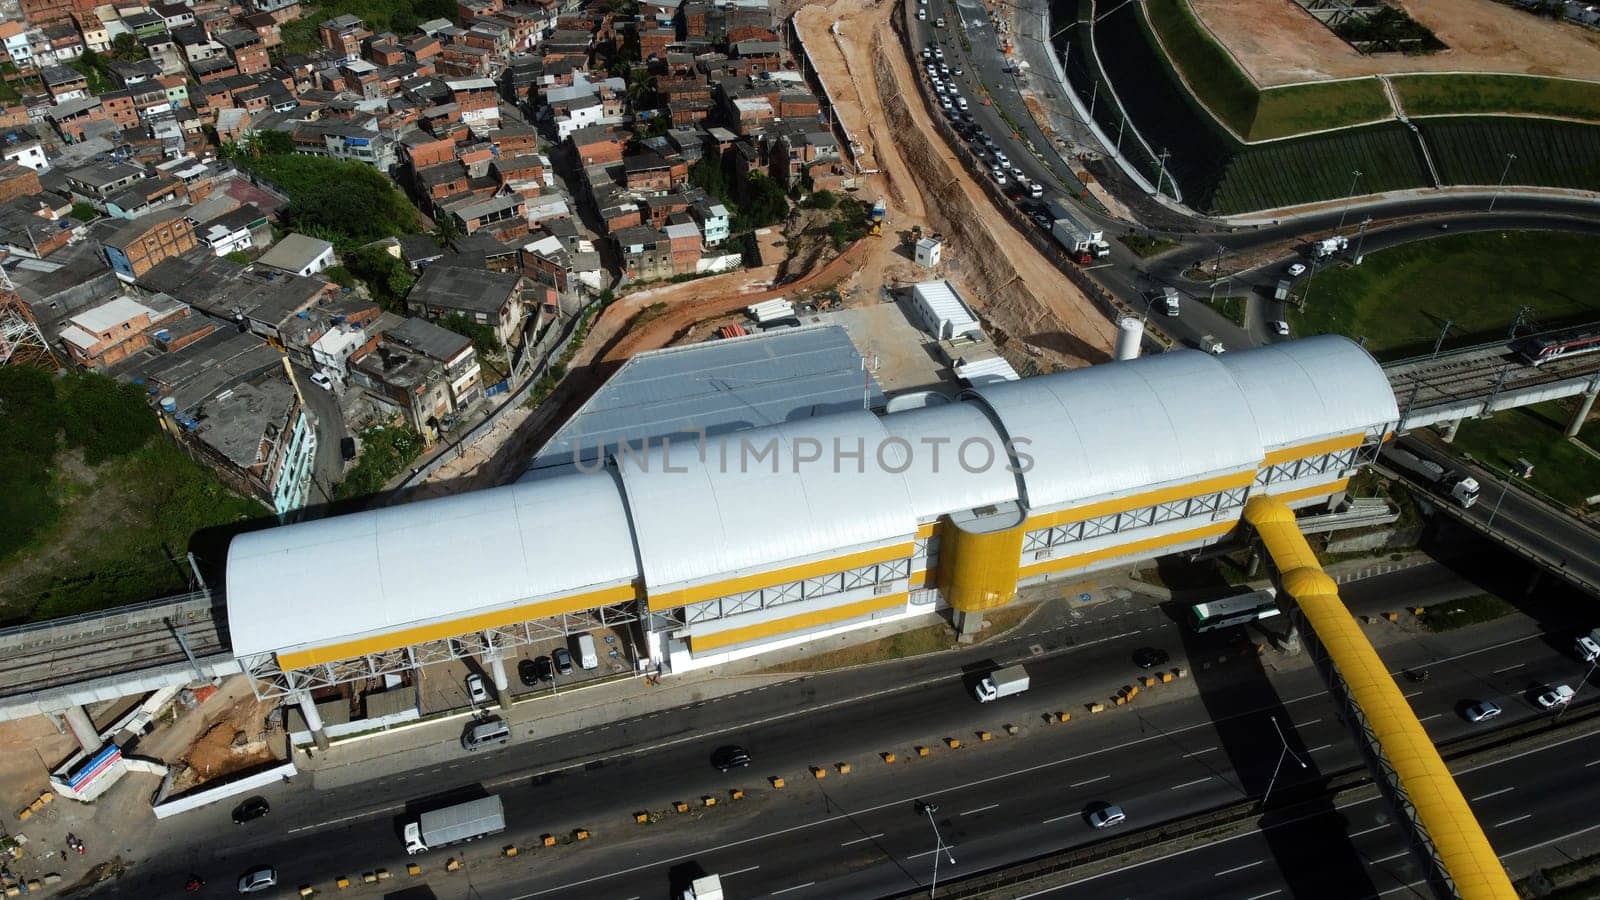 Campinas subway station by joasouza